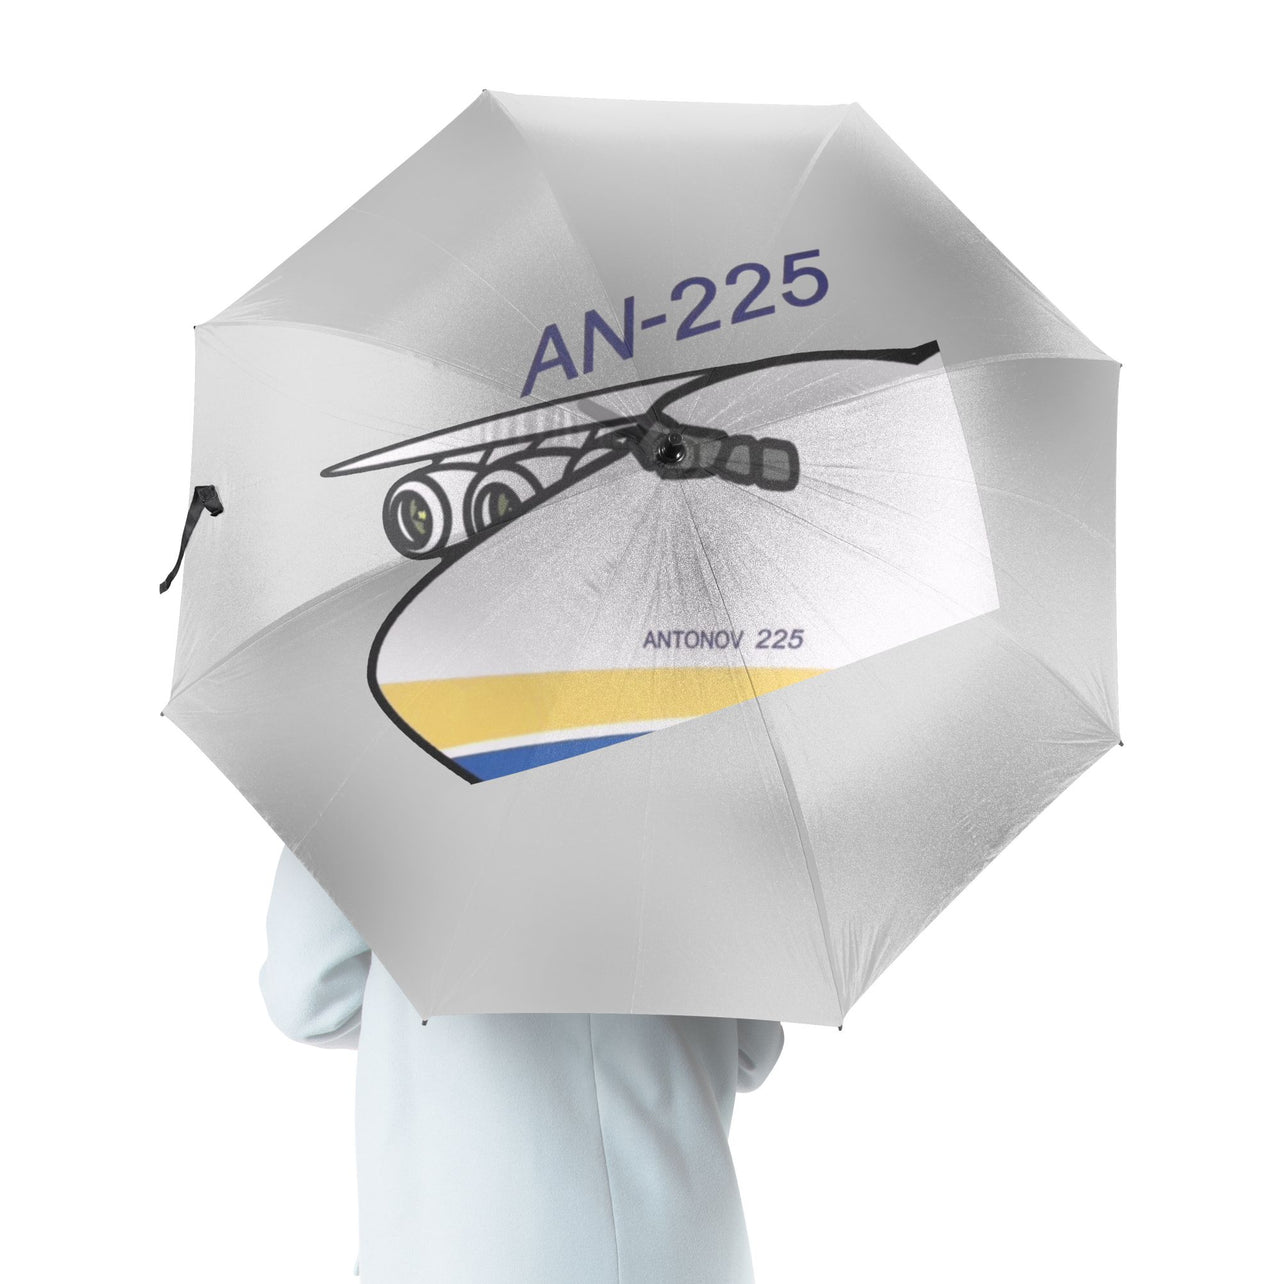 Antonov AN-225 (11) Designed Umbrella